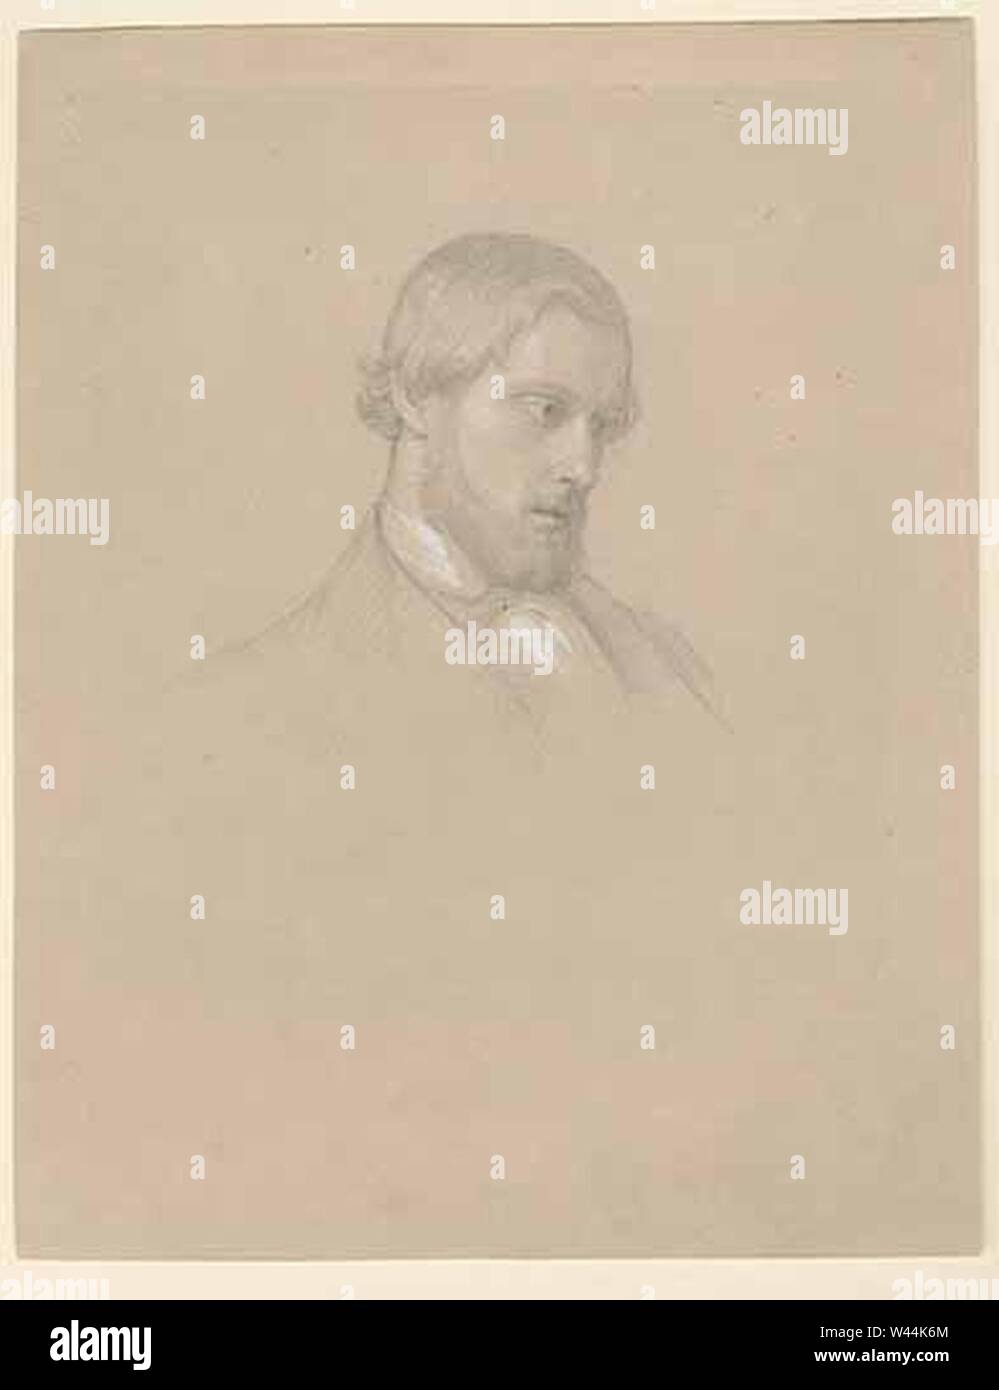 Claudius Schraudolph der Jüngere - Maler. Stock Photo